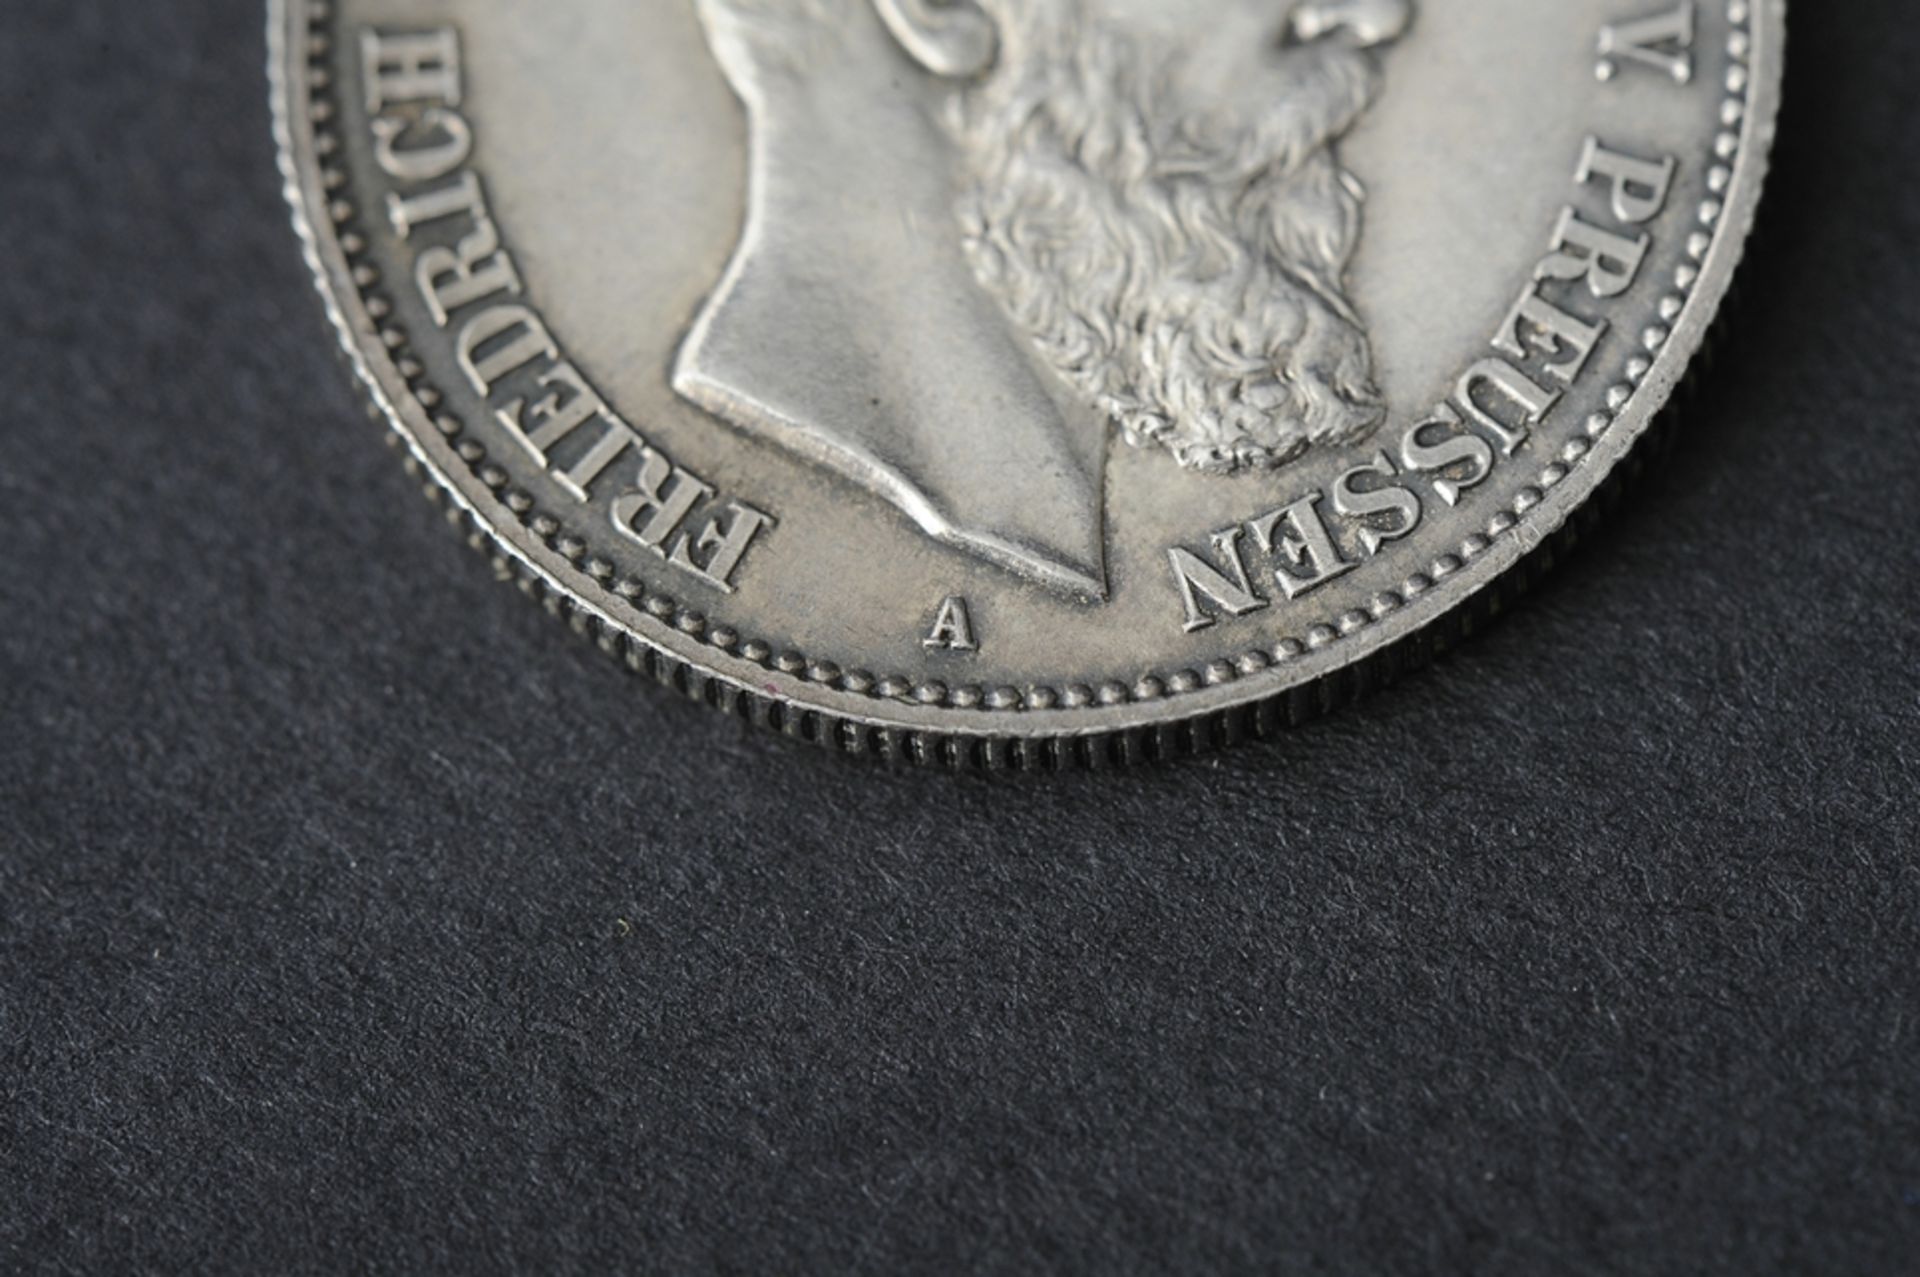 2 Reichsmark, Preussen, Buchstabe "A", 1888, Silber. - Bild 3 aus 3